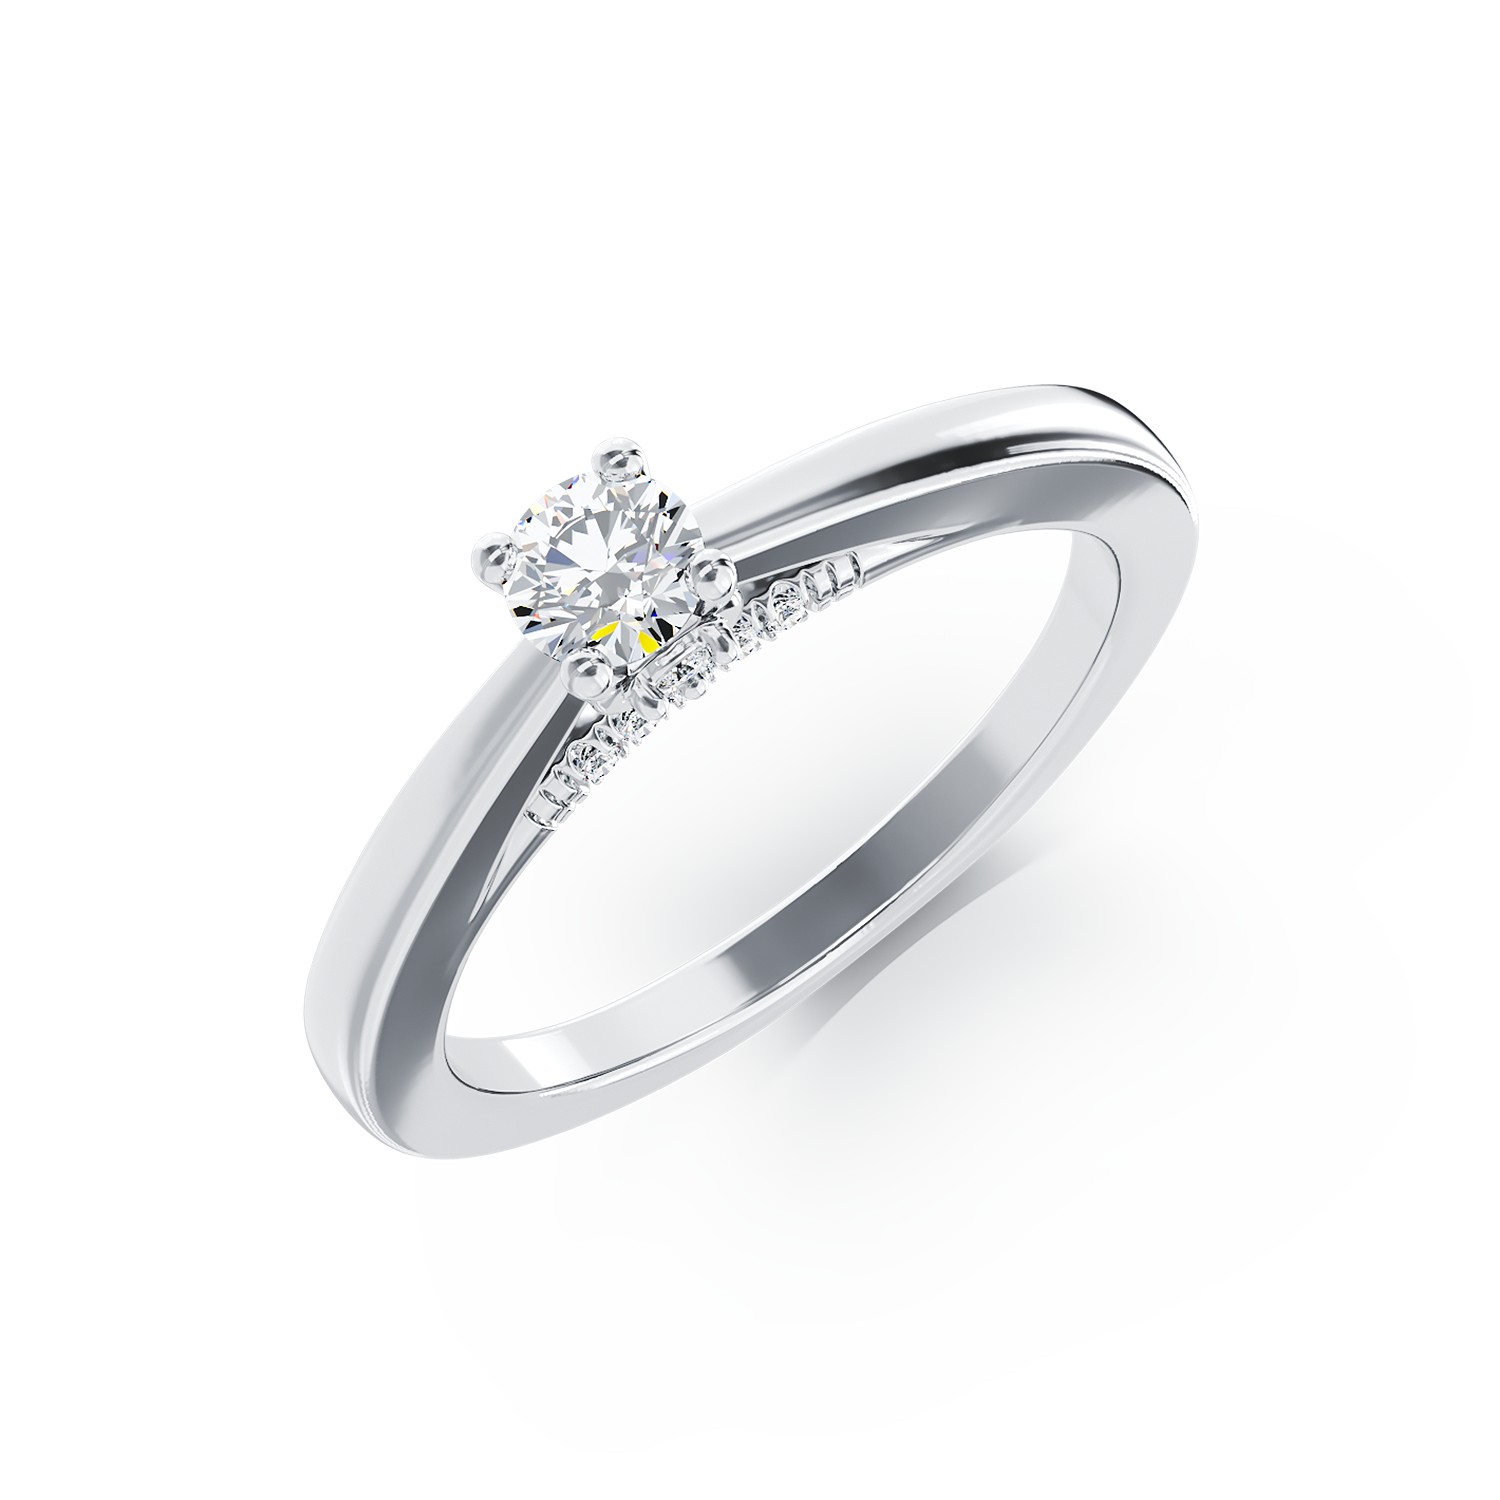 Eljegyzési gyűrű 18K-os fehér aranyból 0,1ct gyémánttal és 0,04ct gyémántokkal. Gramm: 2,48